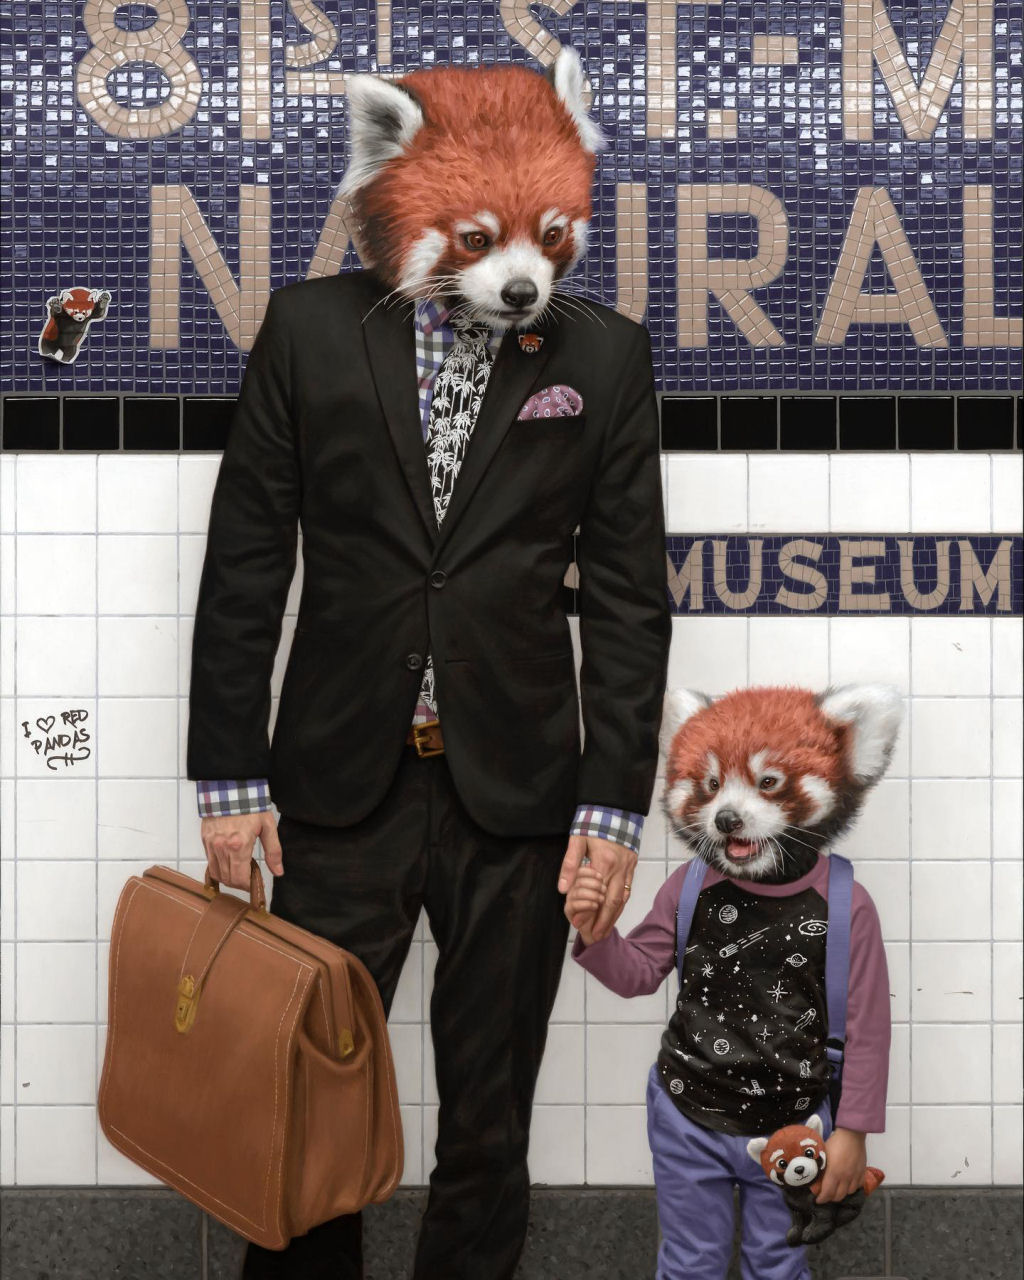 Estas pinturas surreais mostram 'viagens animais' pelo metr de Nova York 04